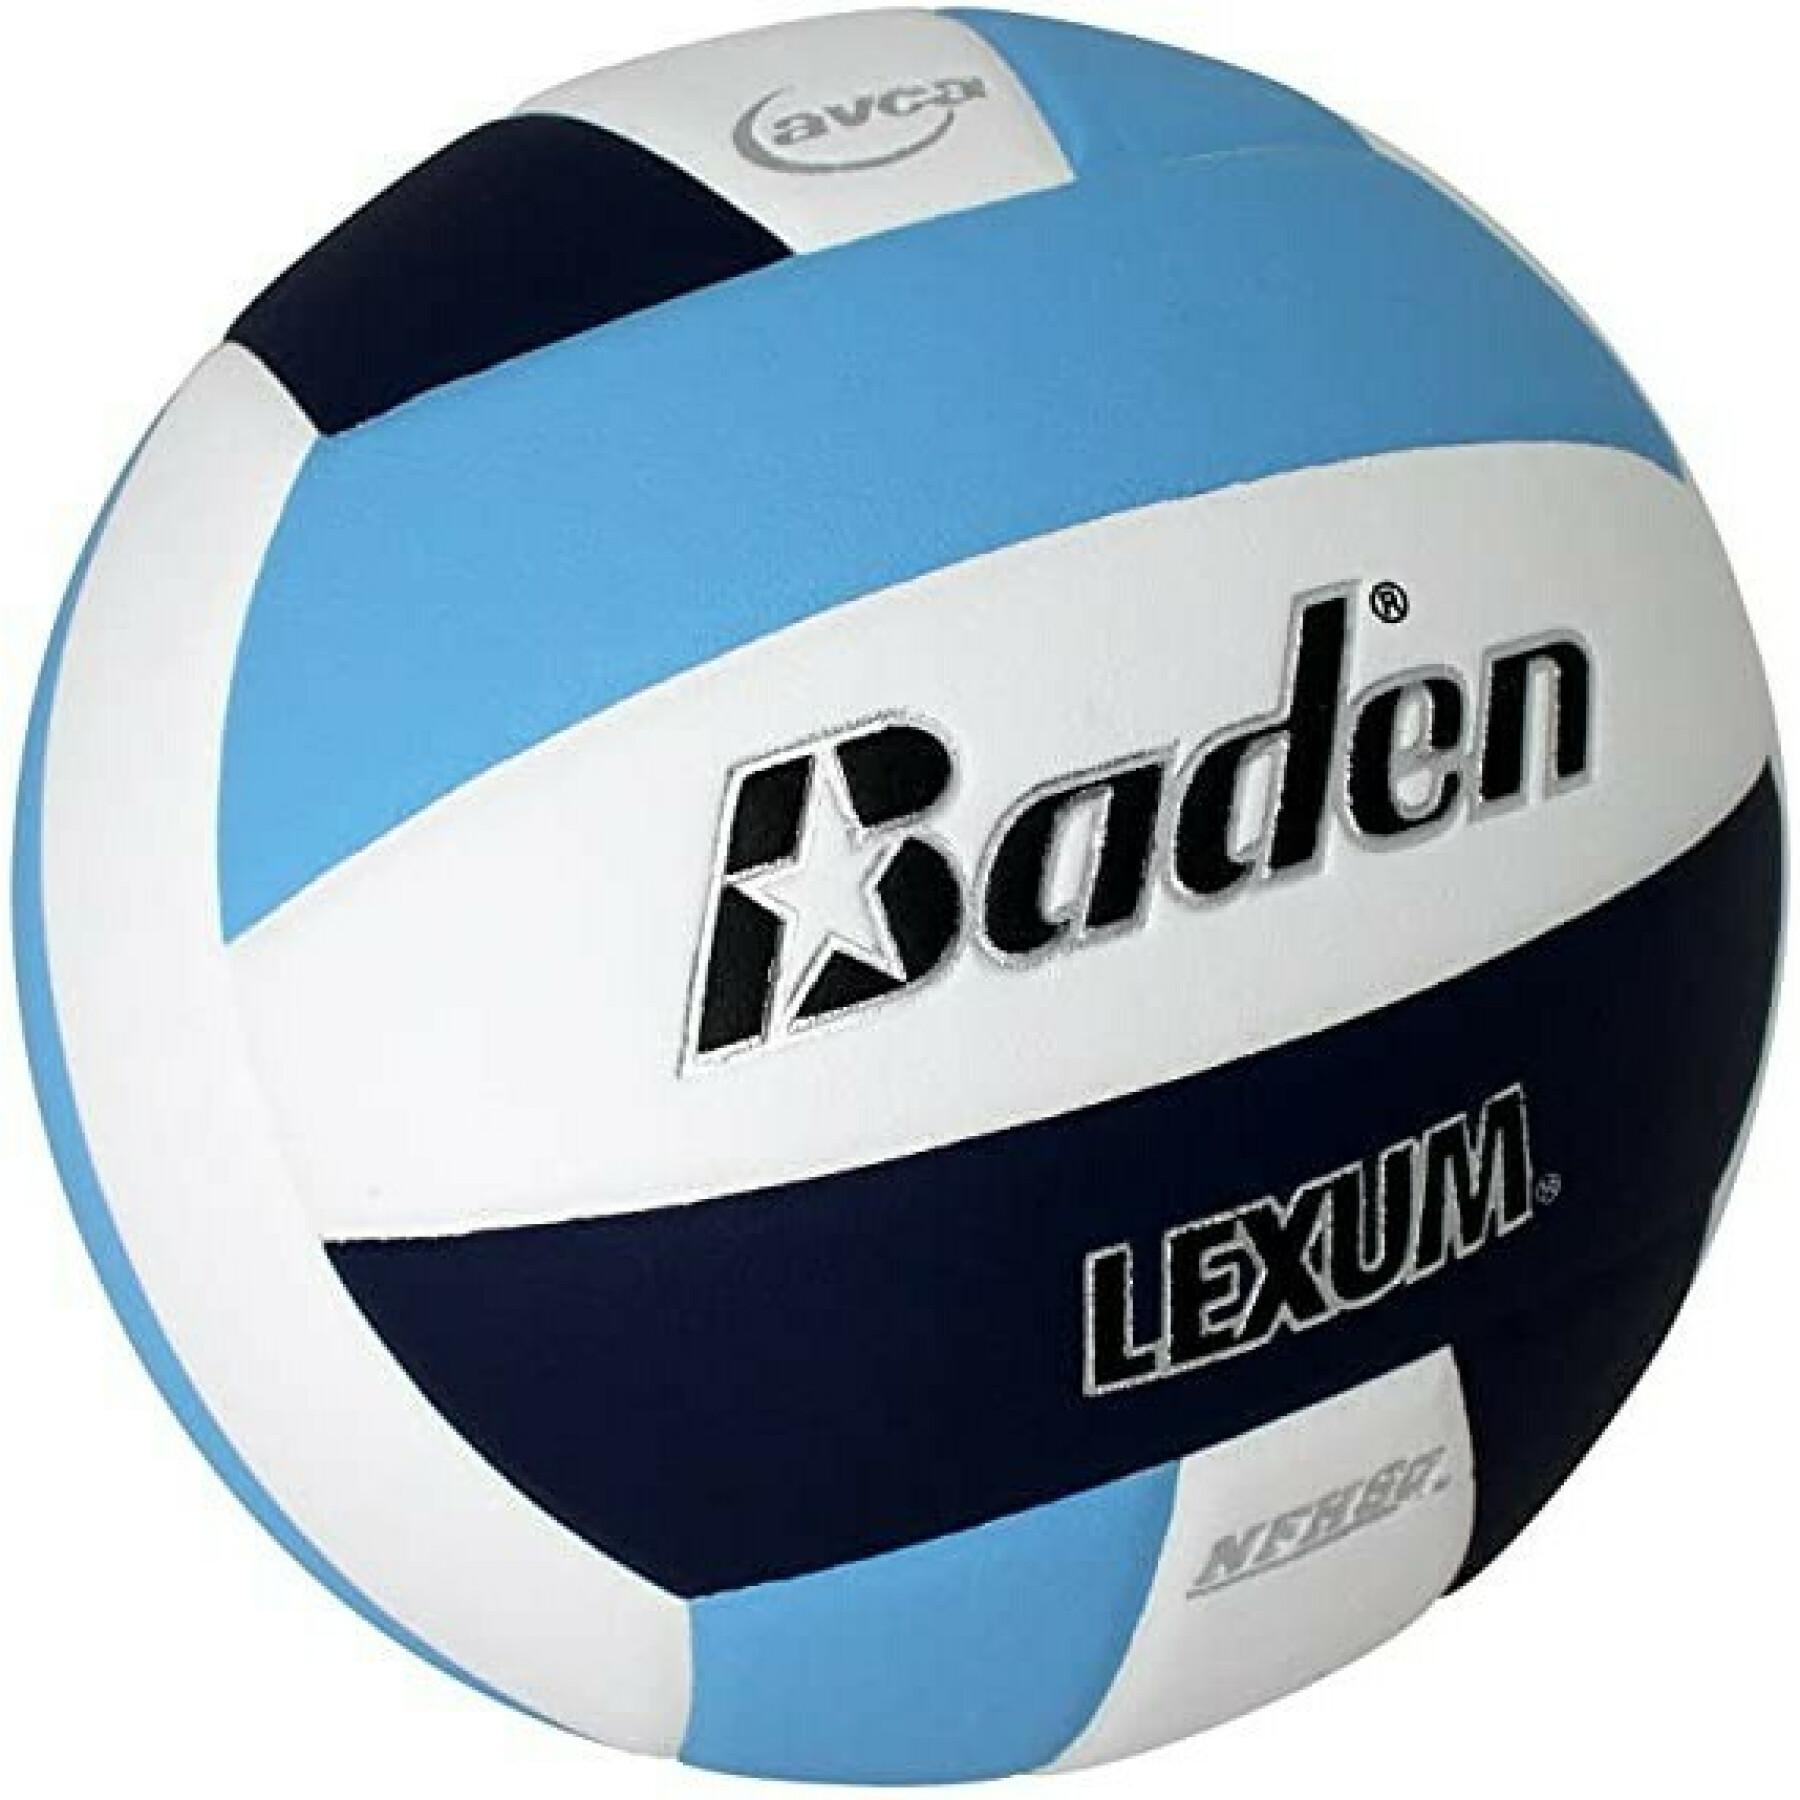 Volleyball ball Baden Sports Lexum